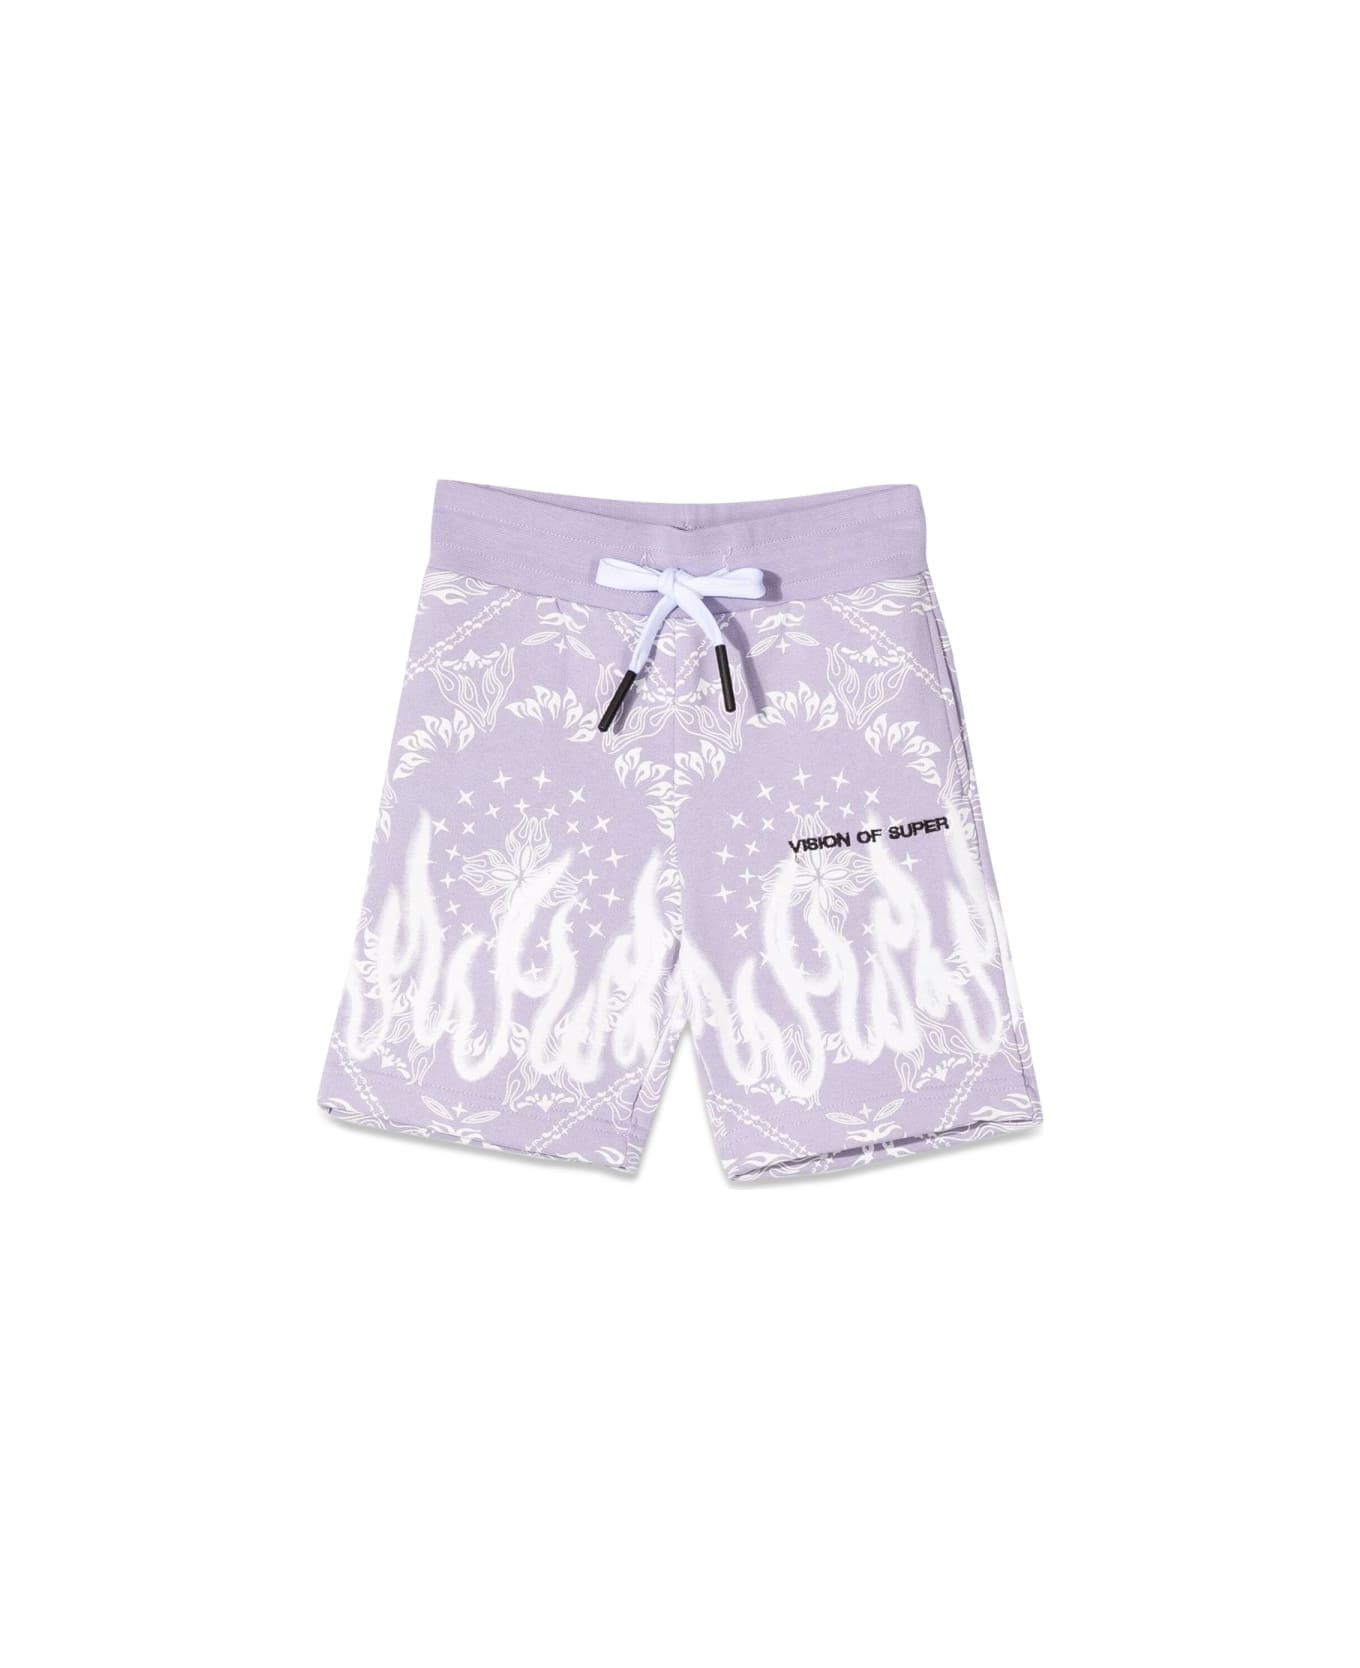 Vision of Super Lilac Shorts Kids With Bandana Print - LILAC